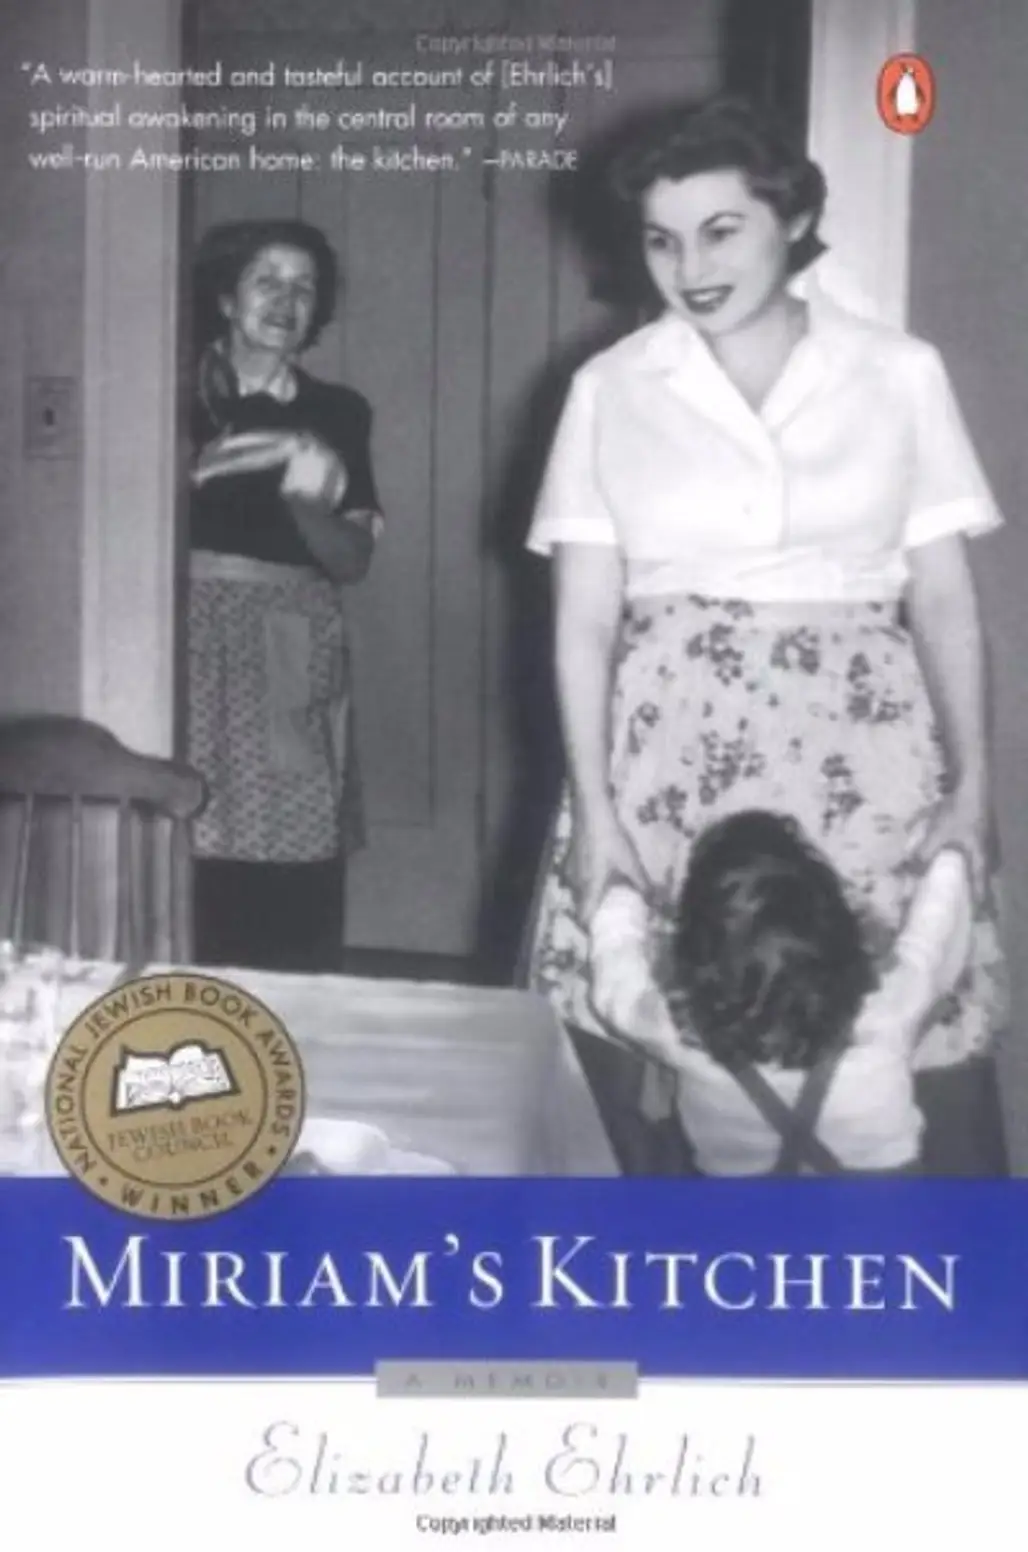 "Miriam’s Kitchen" by Elizabeth Ehrlich